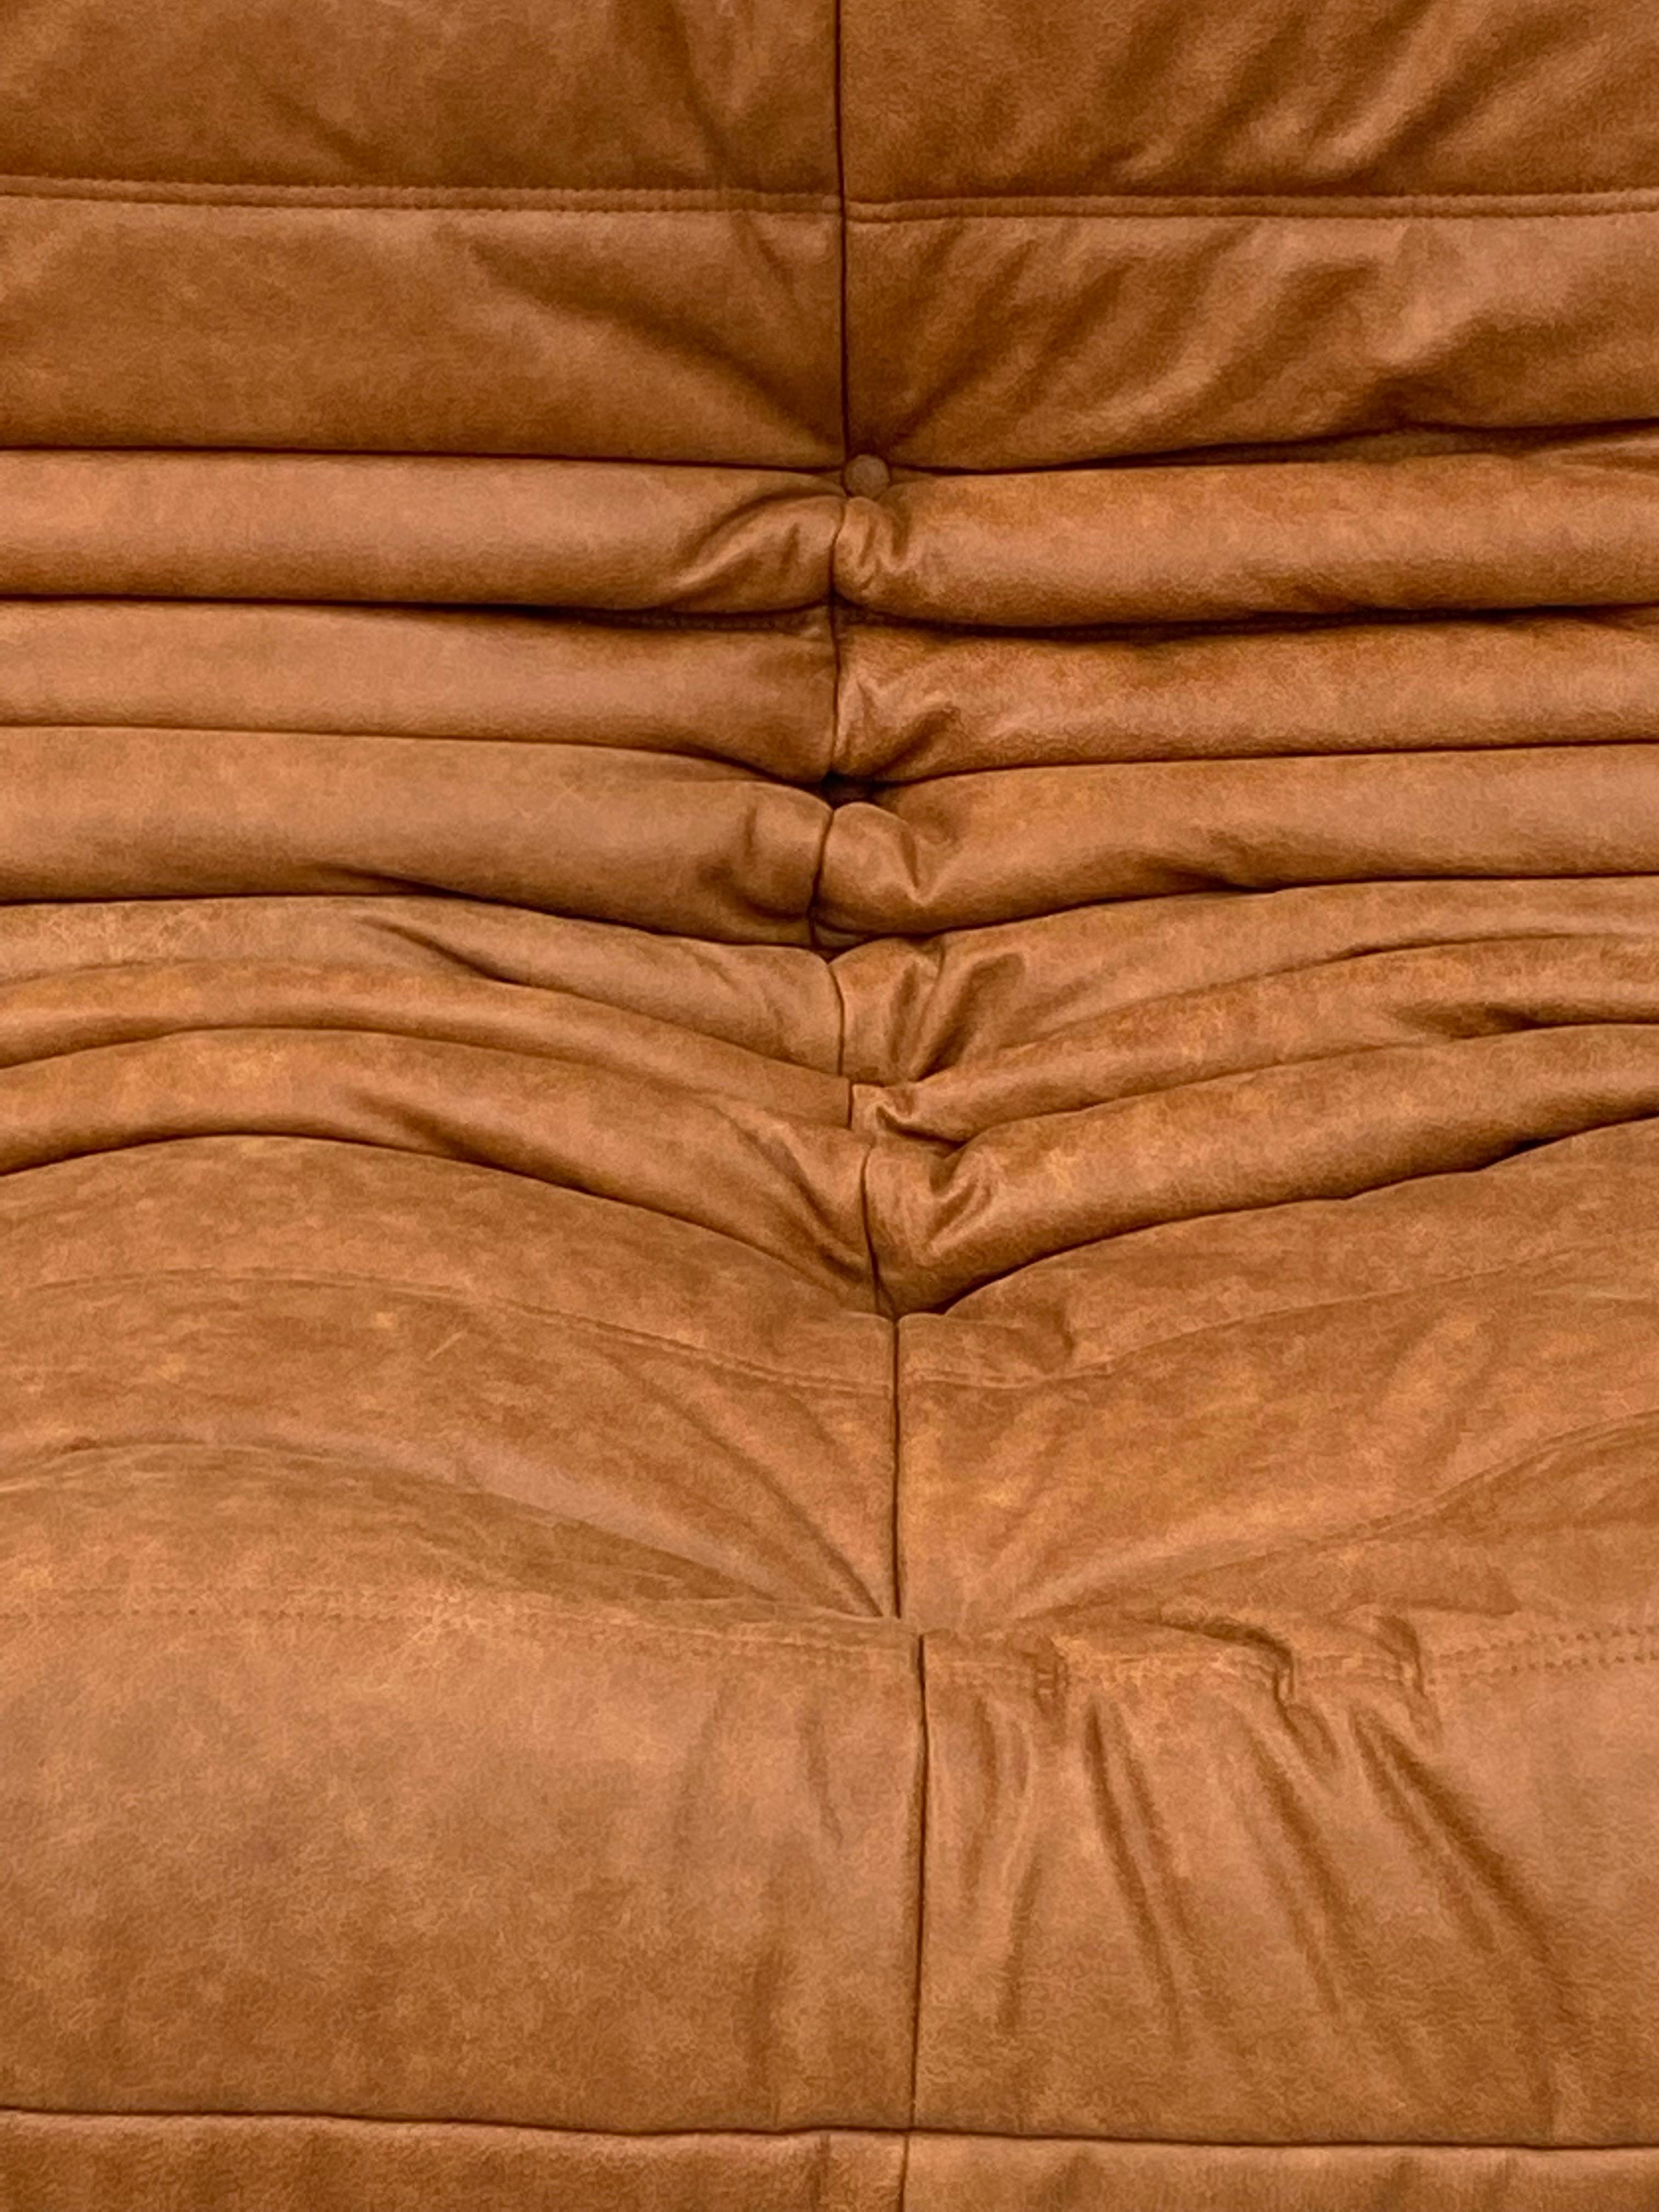 leather togo sofa